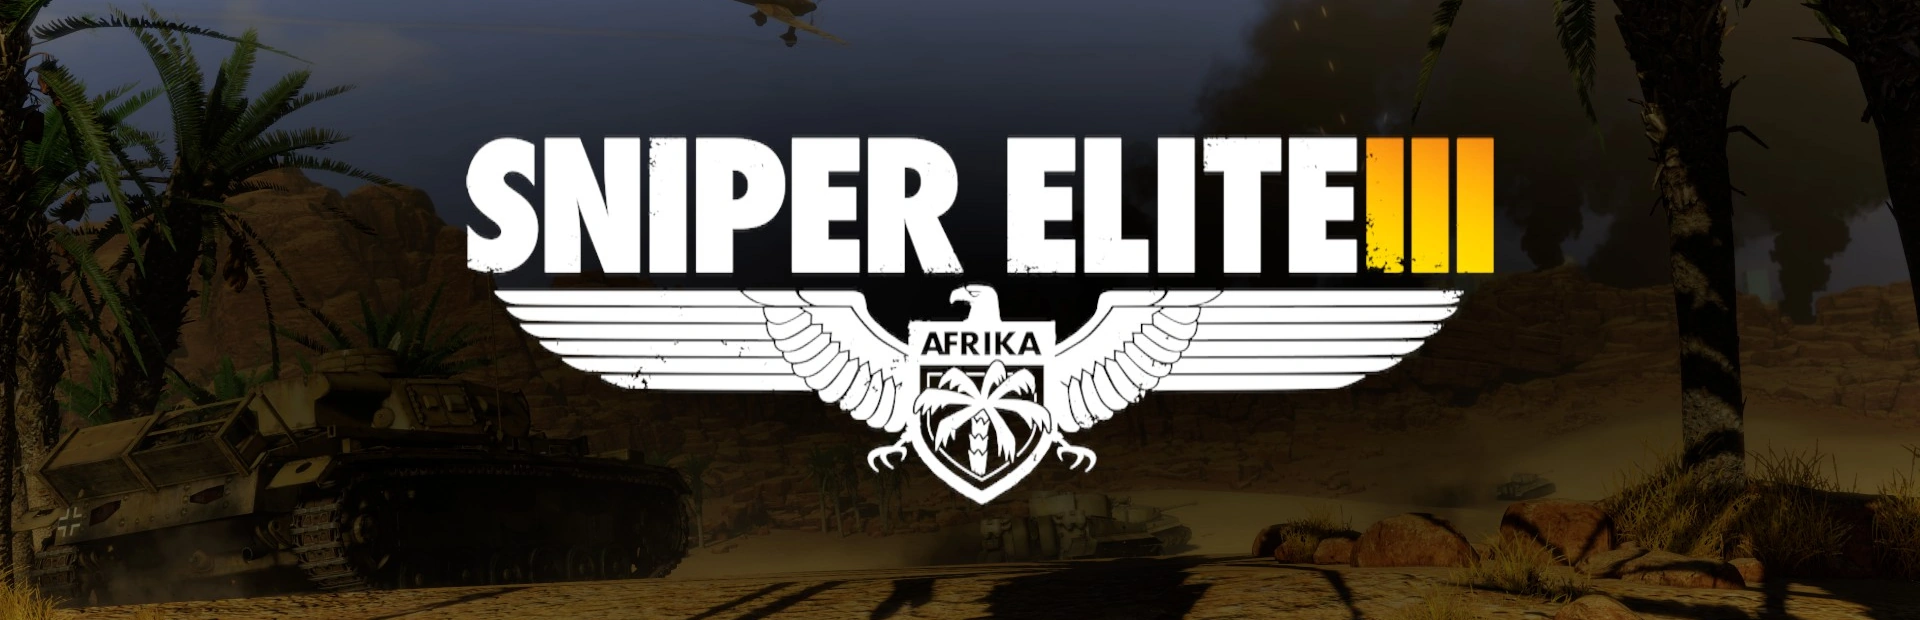 Sniper Elite 3 Ultimate Edition.BANNER3